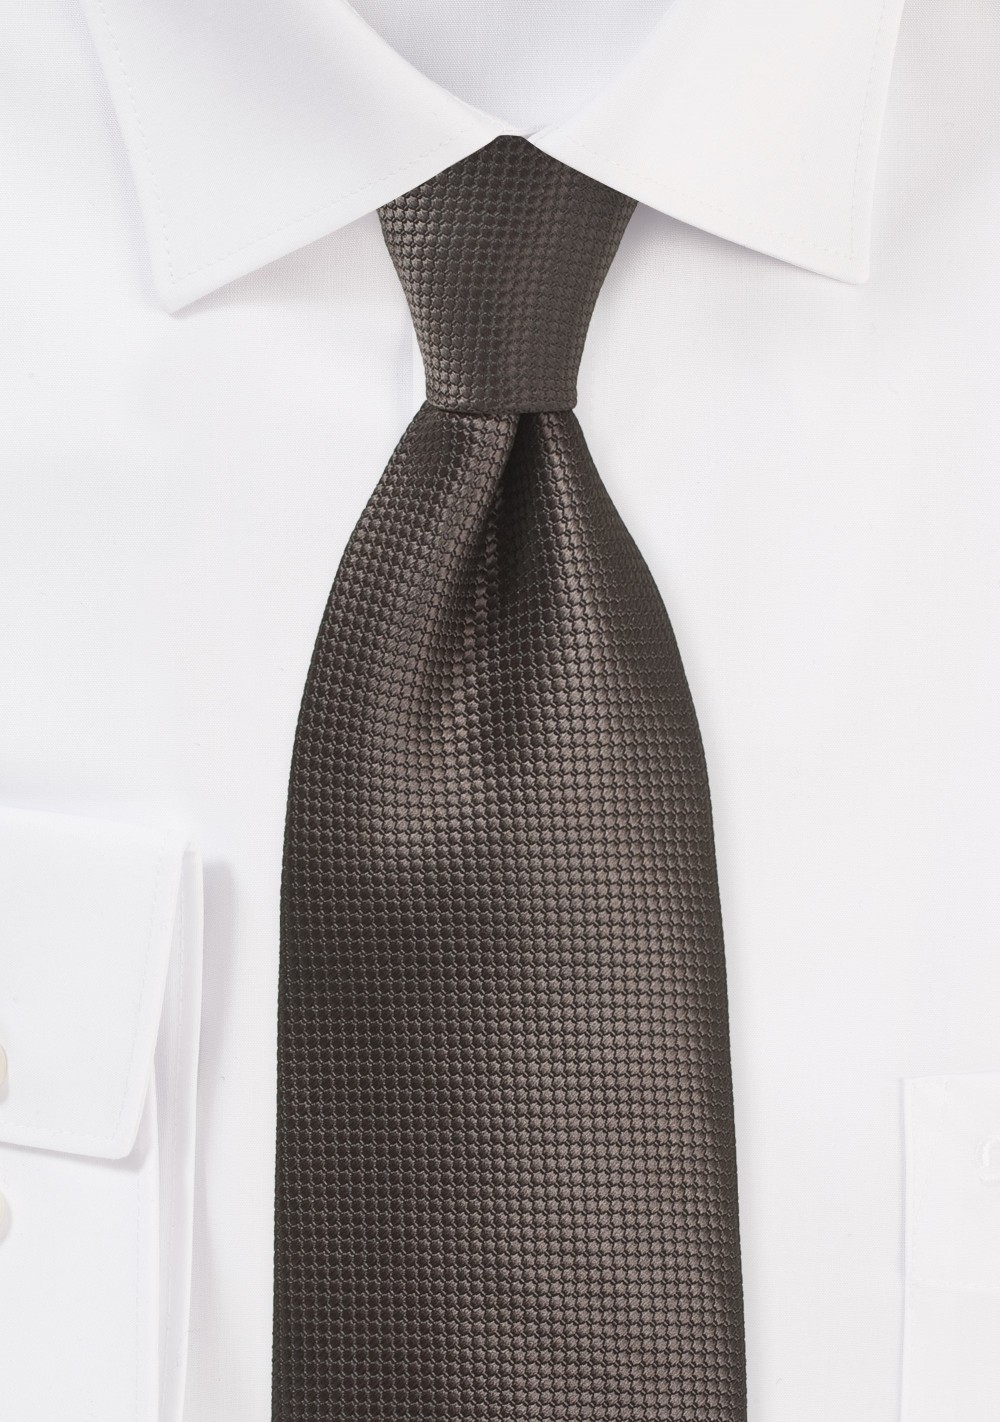 XL Tie in Chestnut Brown